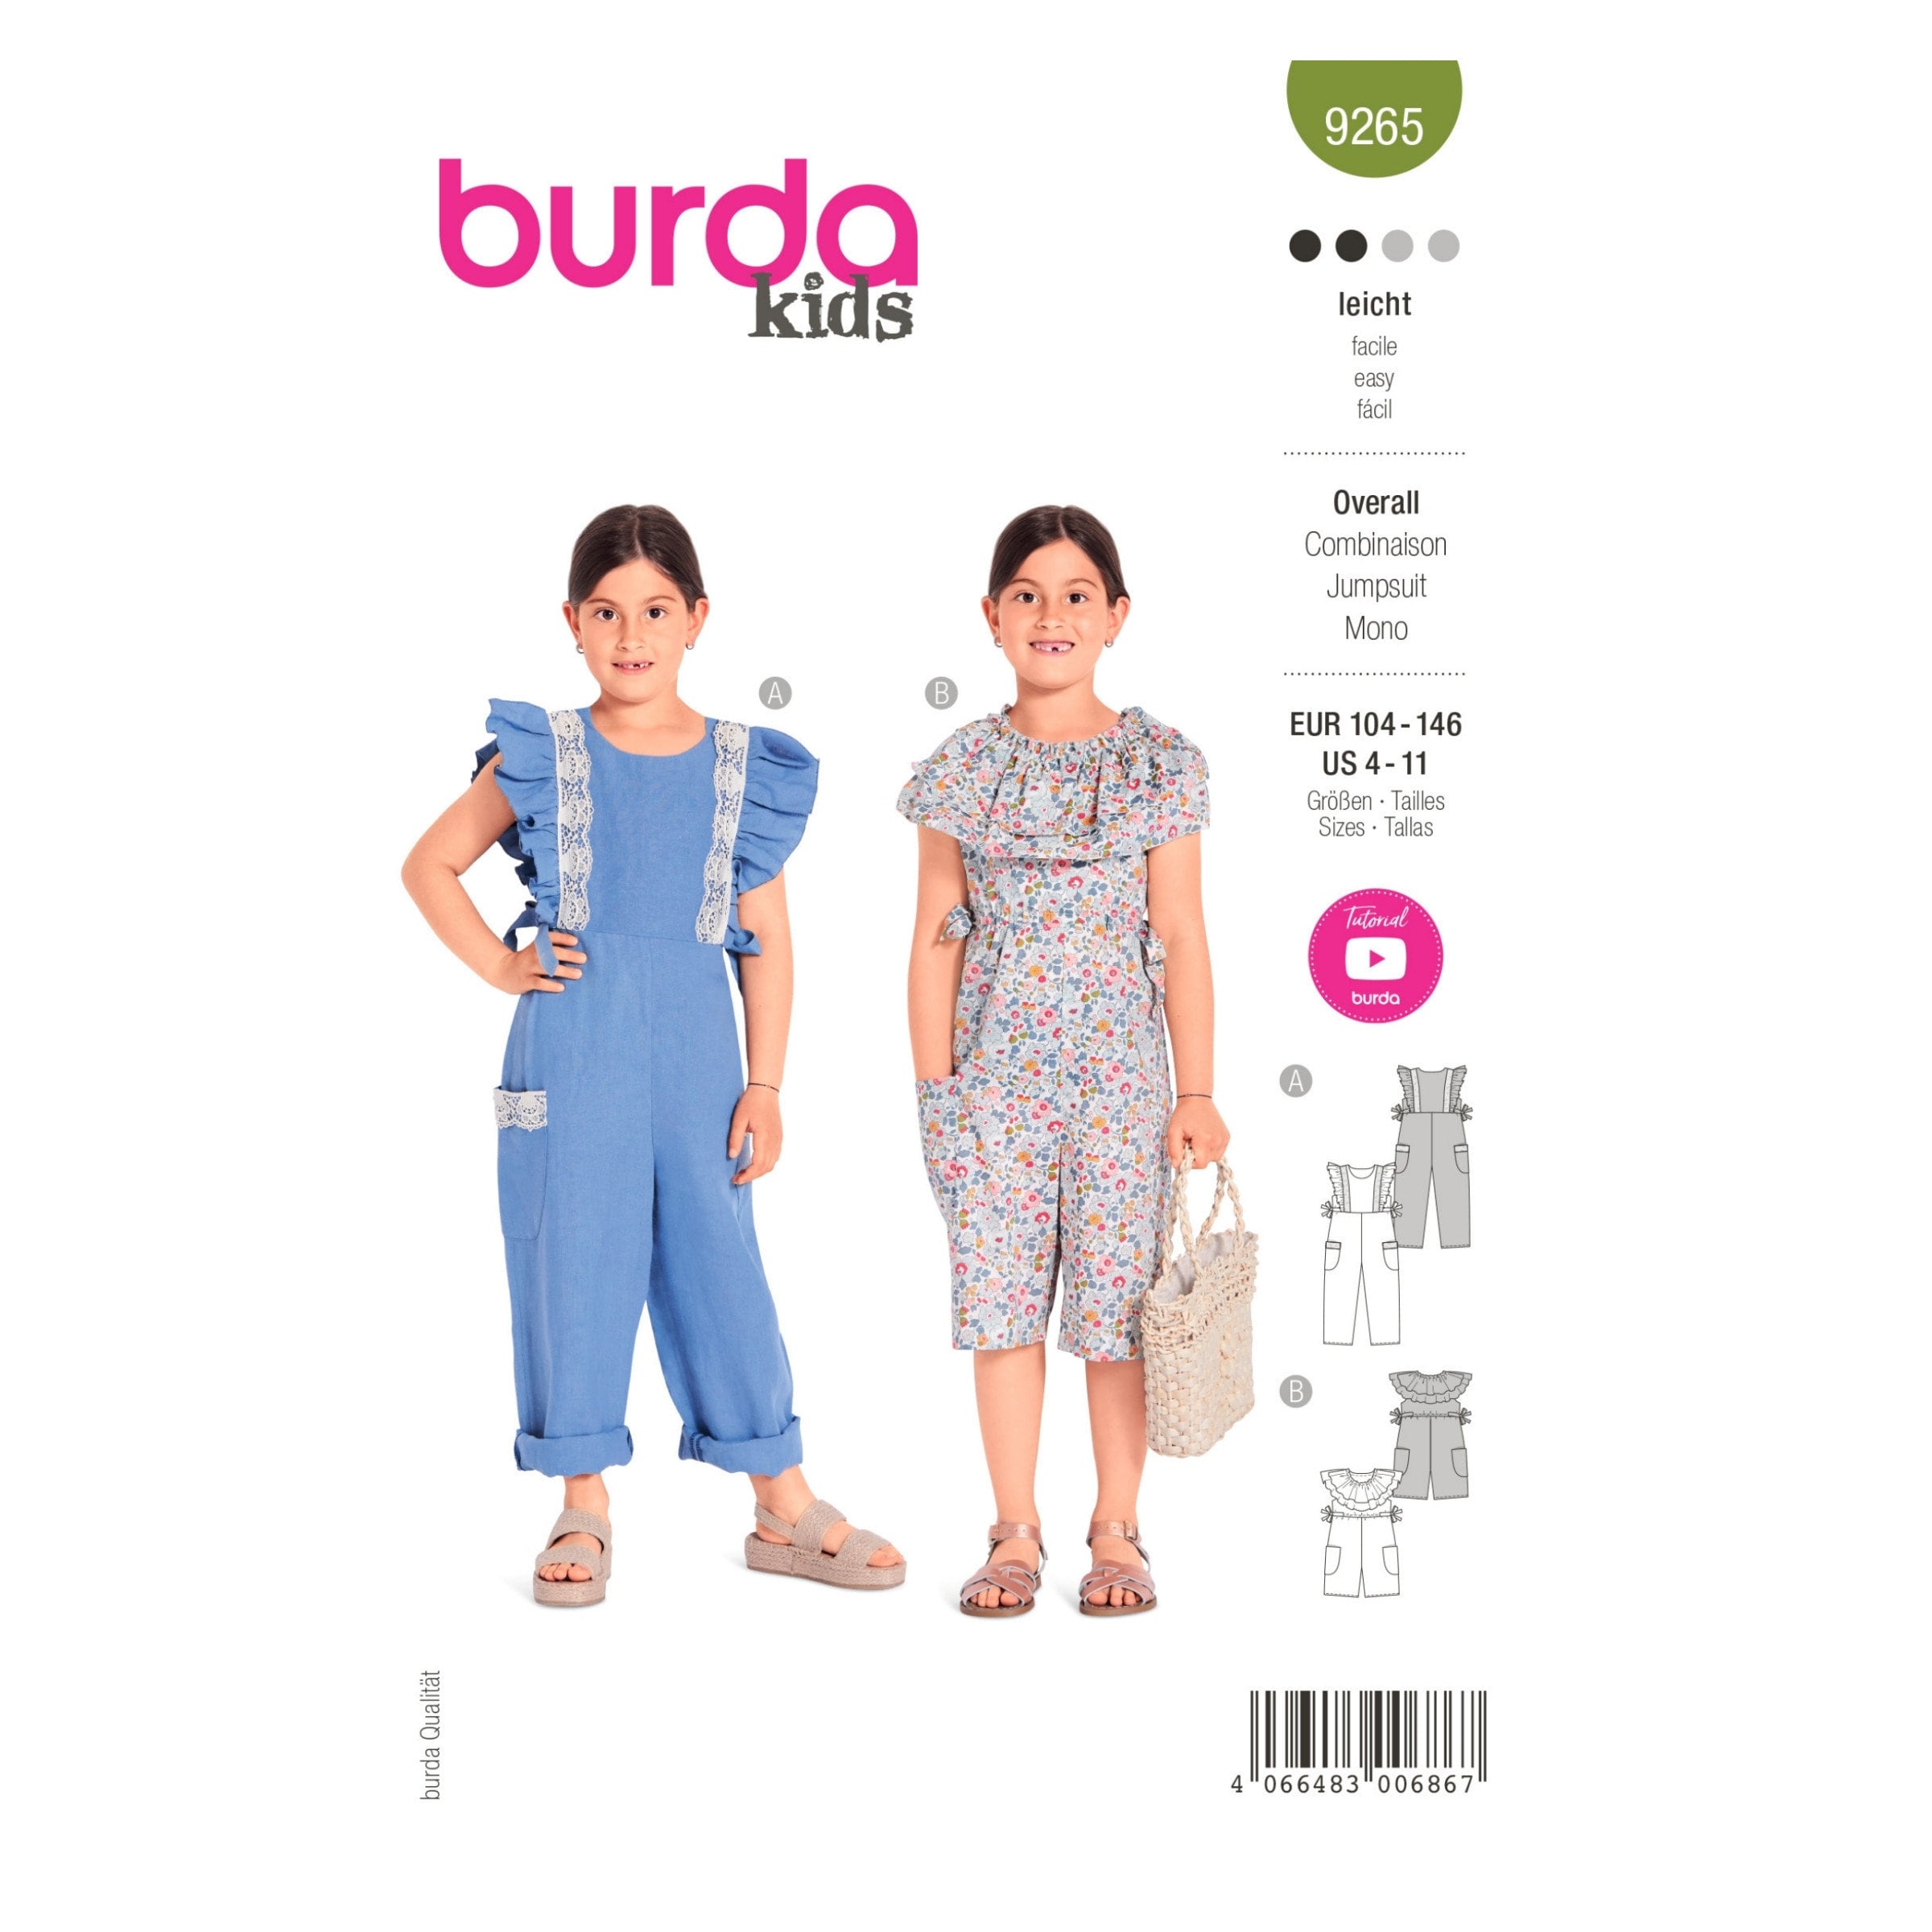 Vaderlijk De gasten handicap Burda Kids Pattern No. 9265 Overalls Lush Ruffles Short - Etsy Norway